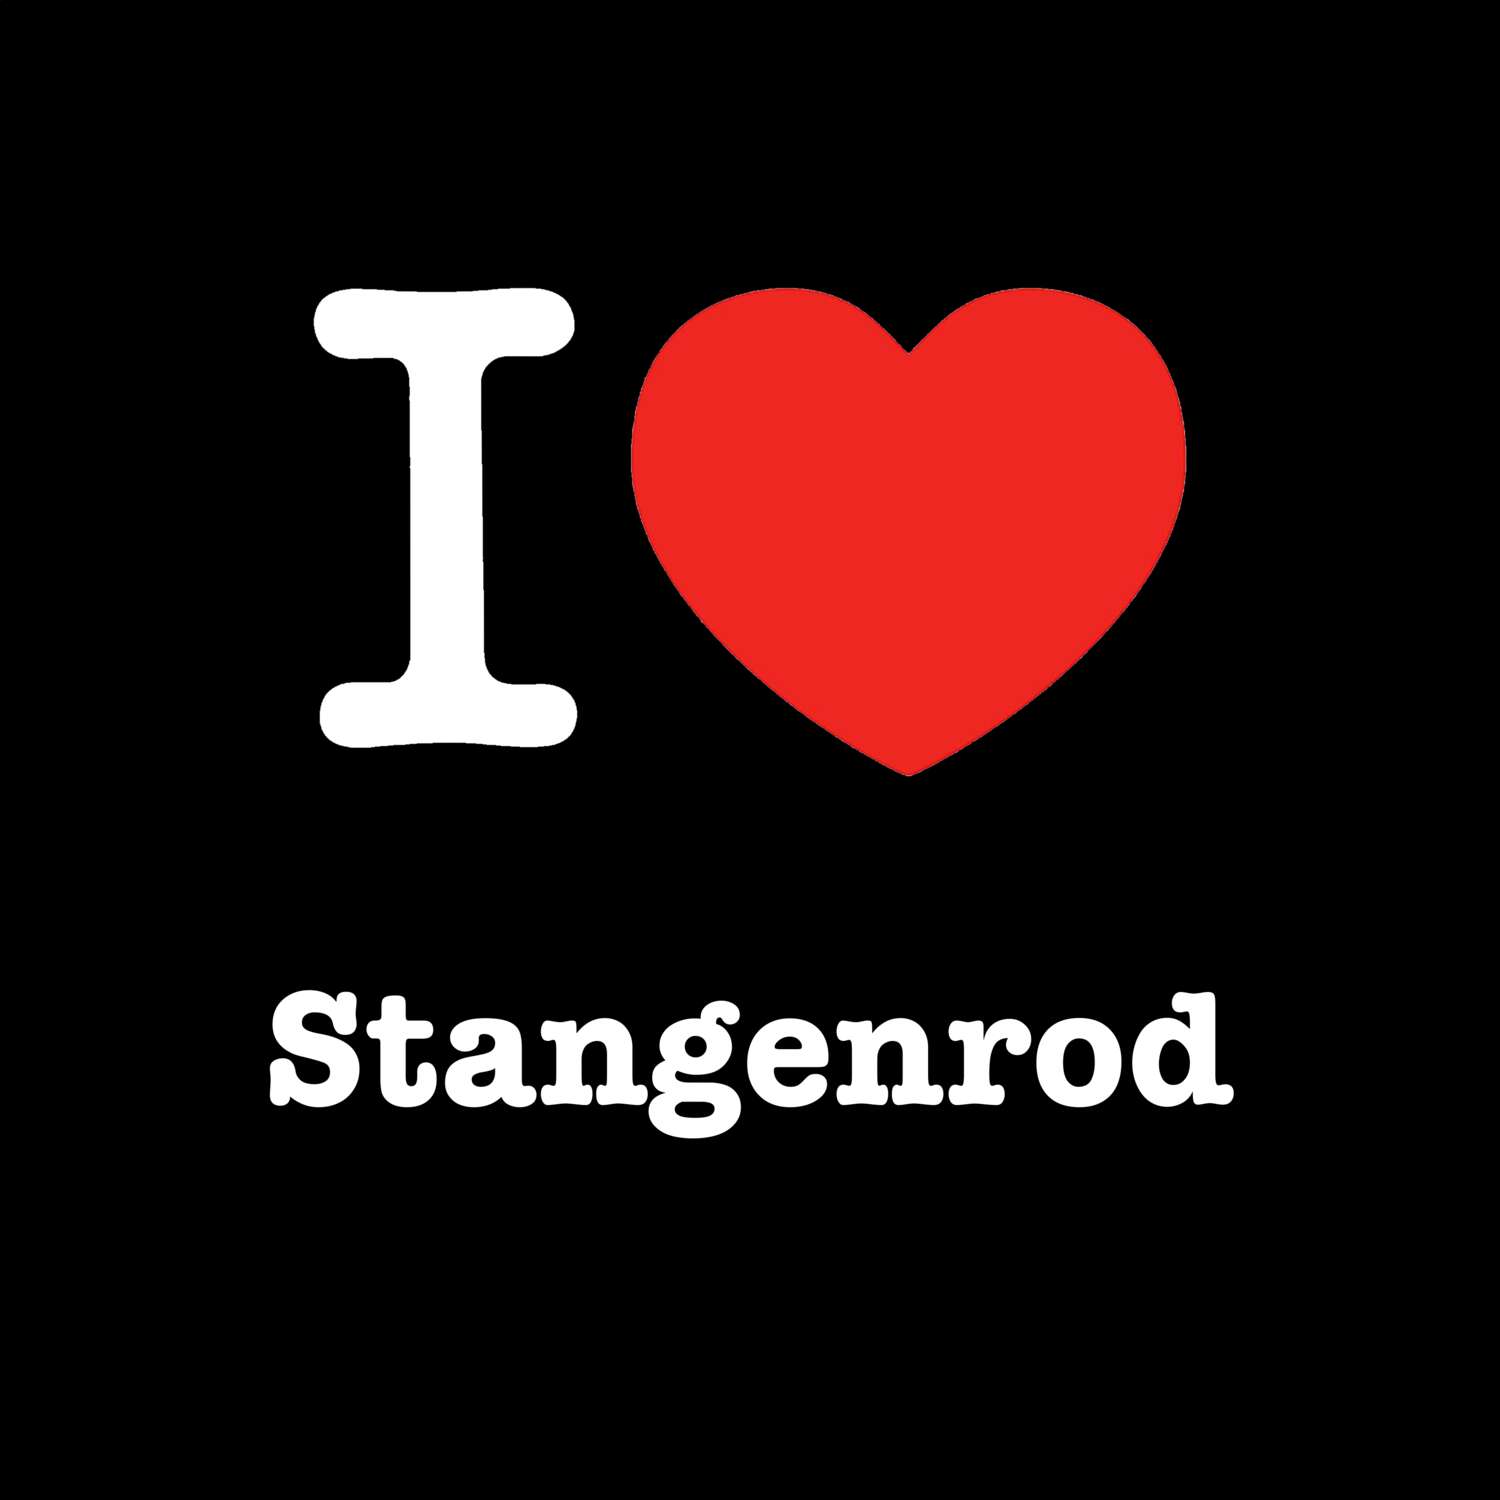 Stangenrod T-Shirt »I love«